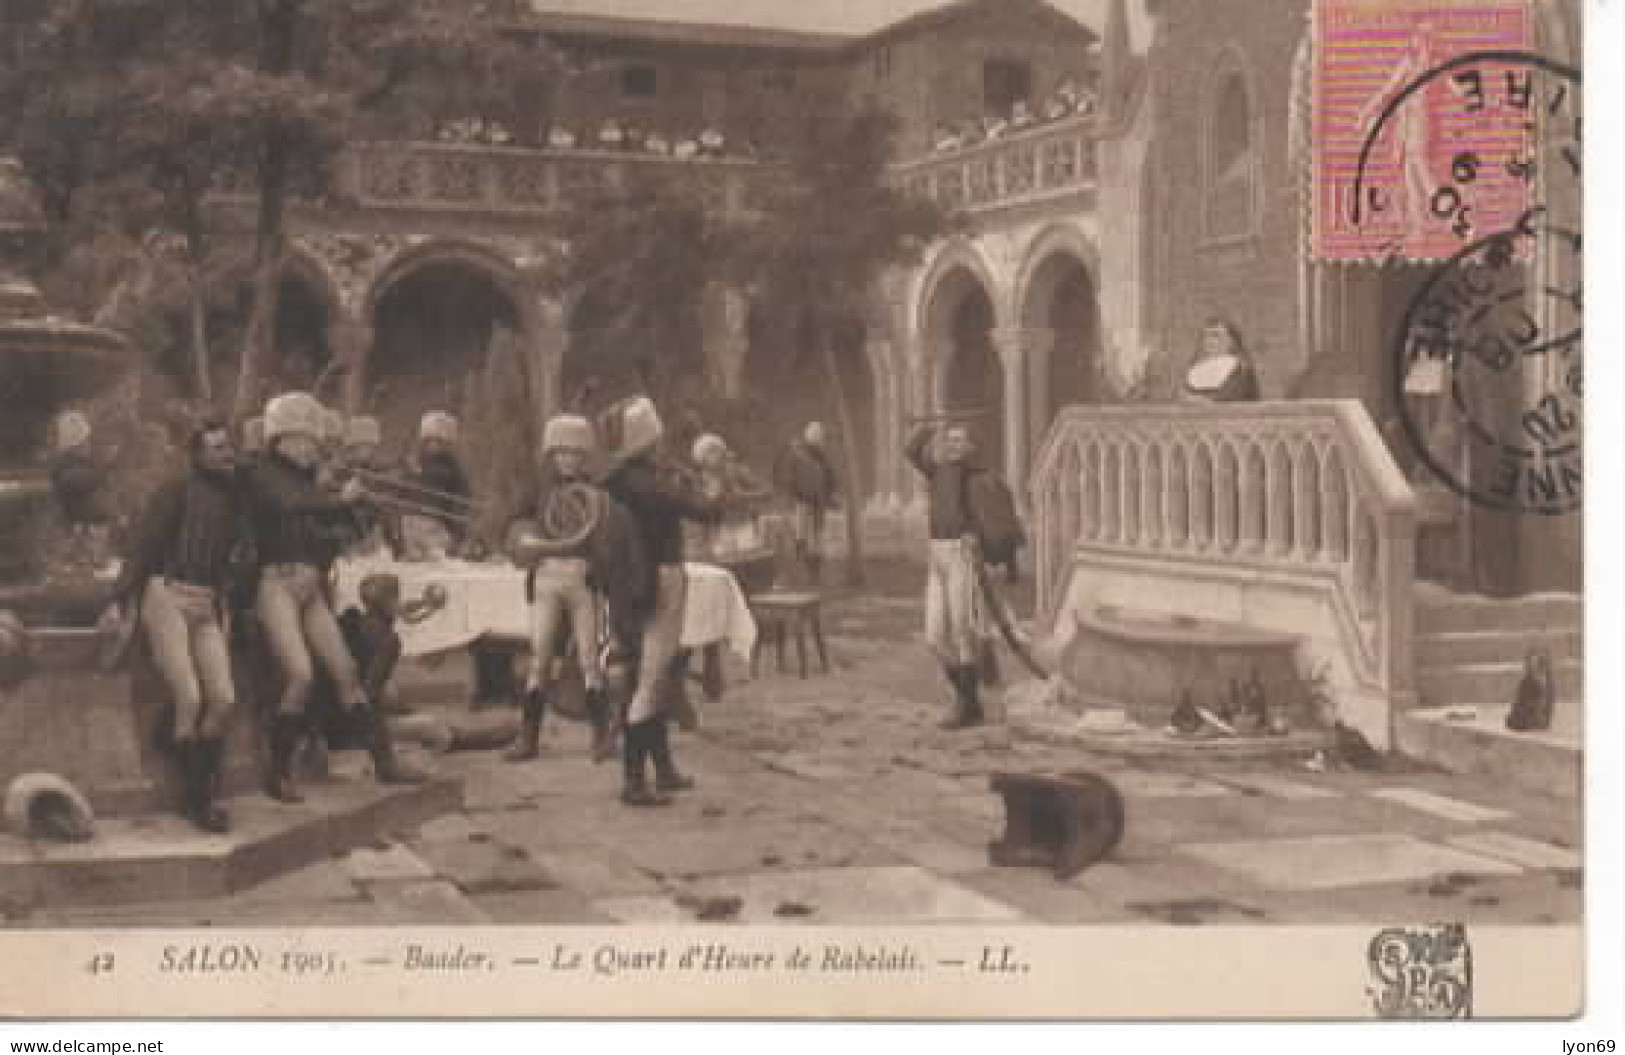 SALON 1905 42 BAADER  LE QUARD  D HEURE  DE RABELAIS - Paintings